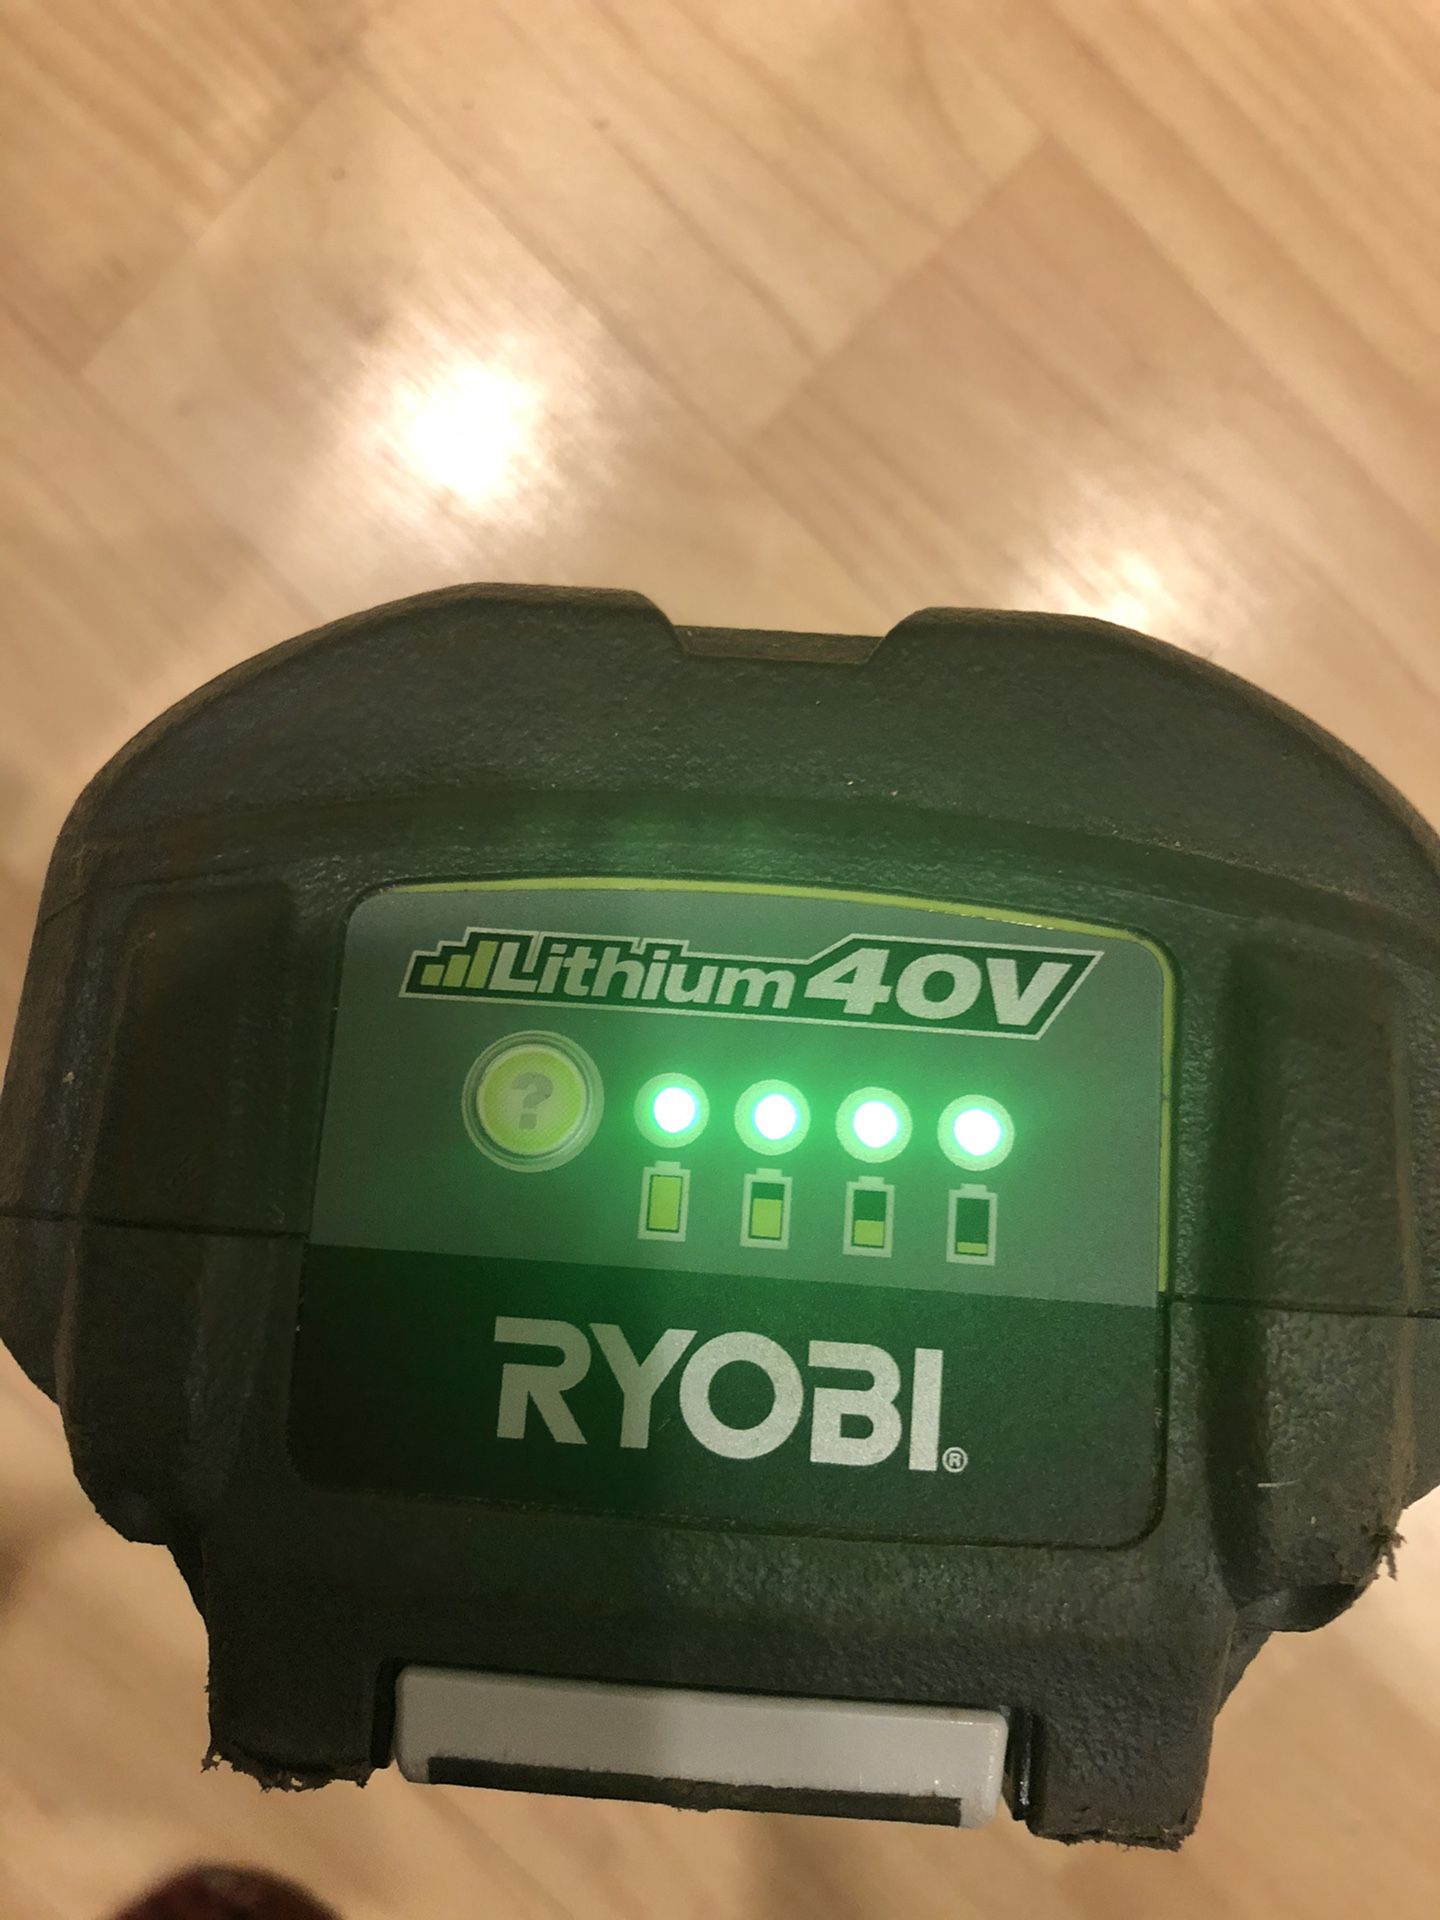 Ryobi 40v battery used